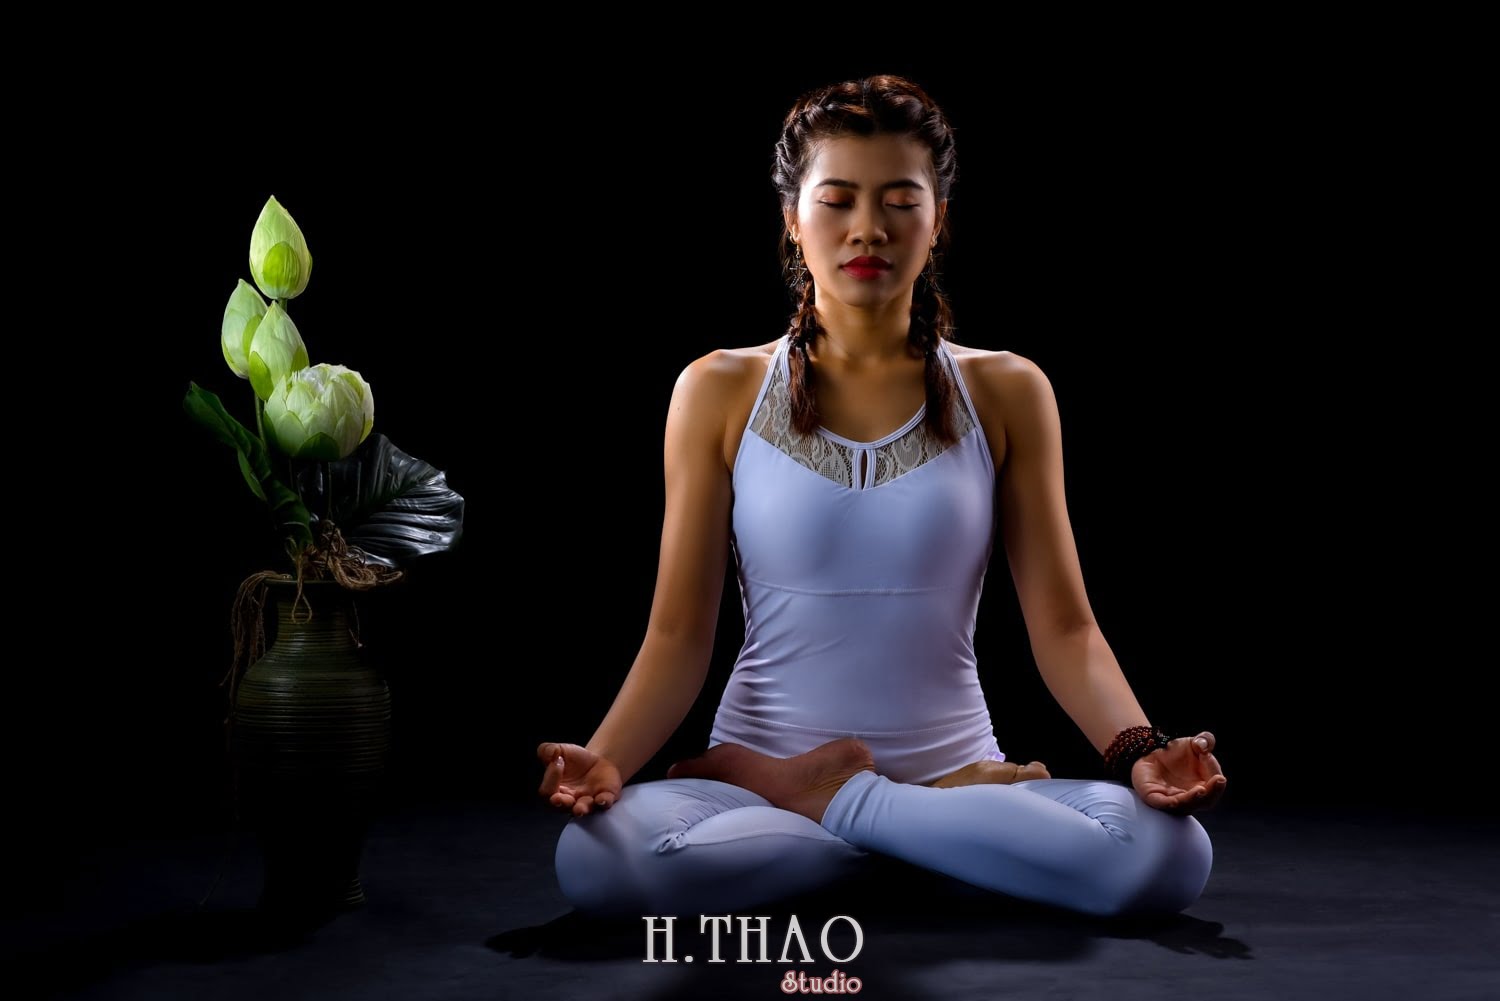 Anh yoga 13 min - Bộ ảnh Yoga chụp trong studio tuyệt đẹp – HThao Studio